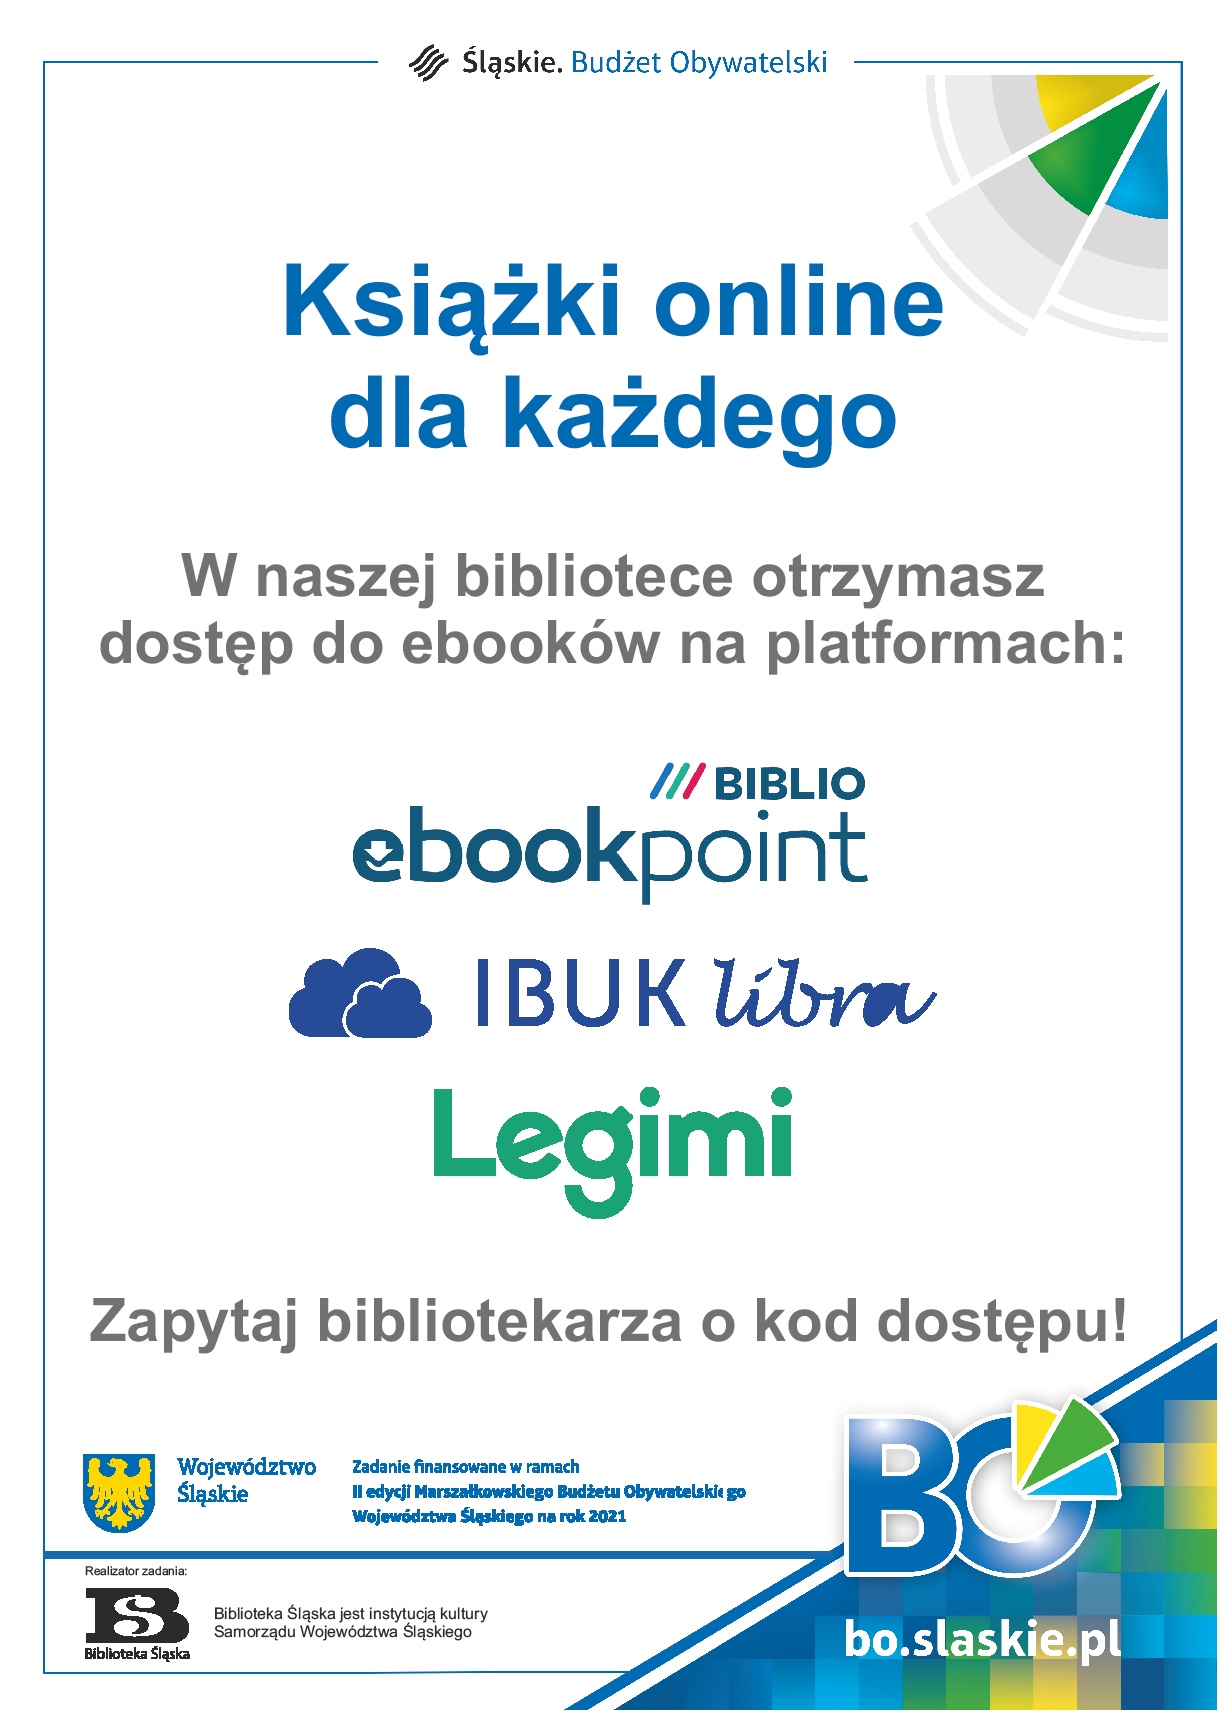 Książki online dla każdego - dostęp do ebooków na platformach: Biblio ebookpoint, IbukLibra, Legimi